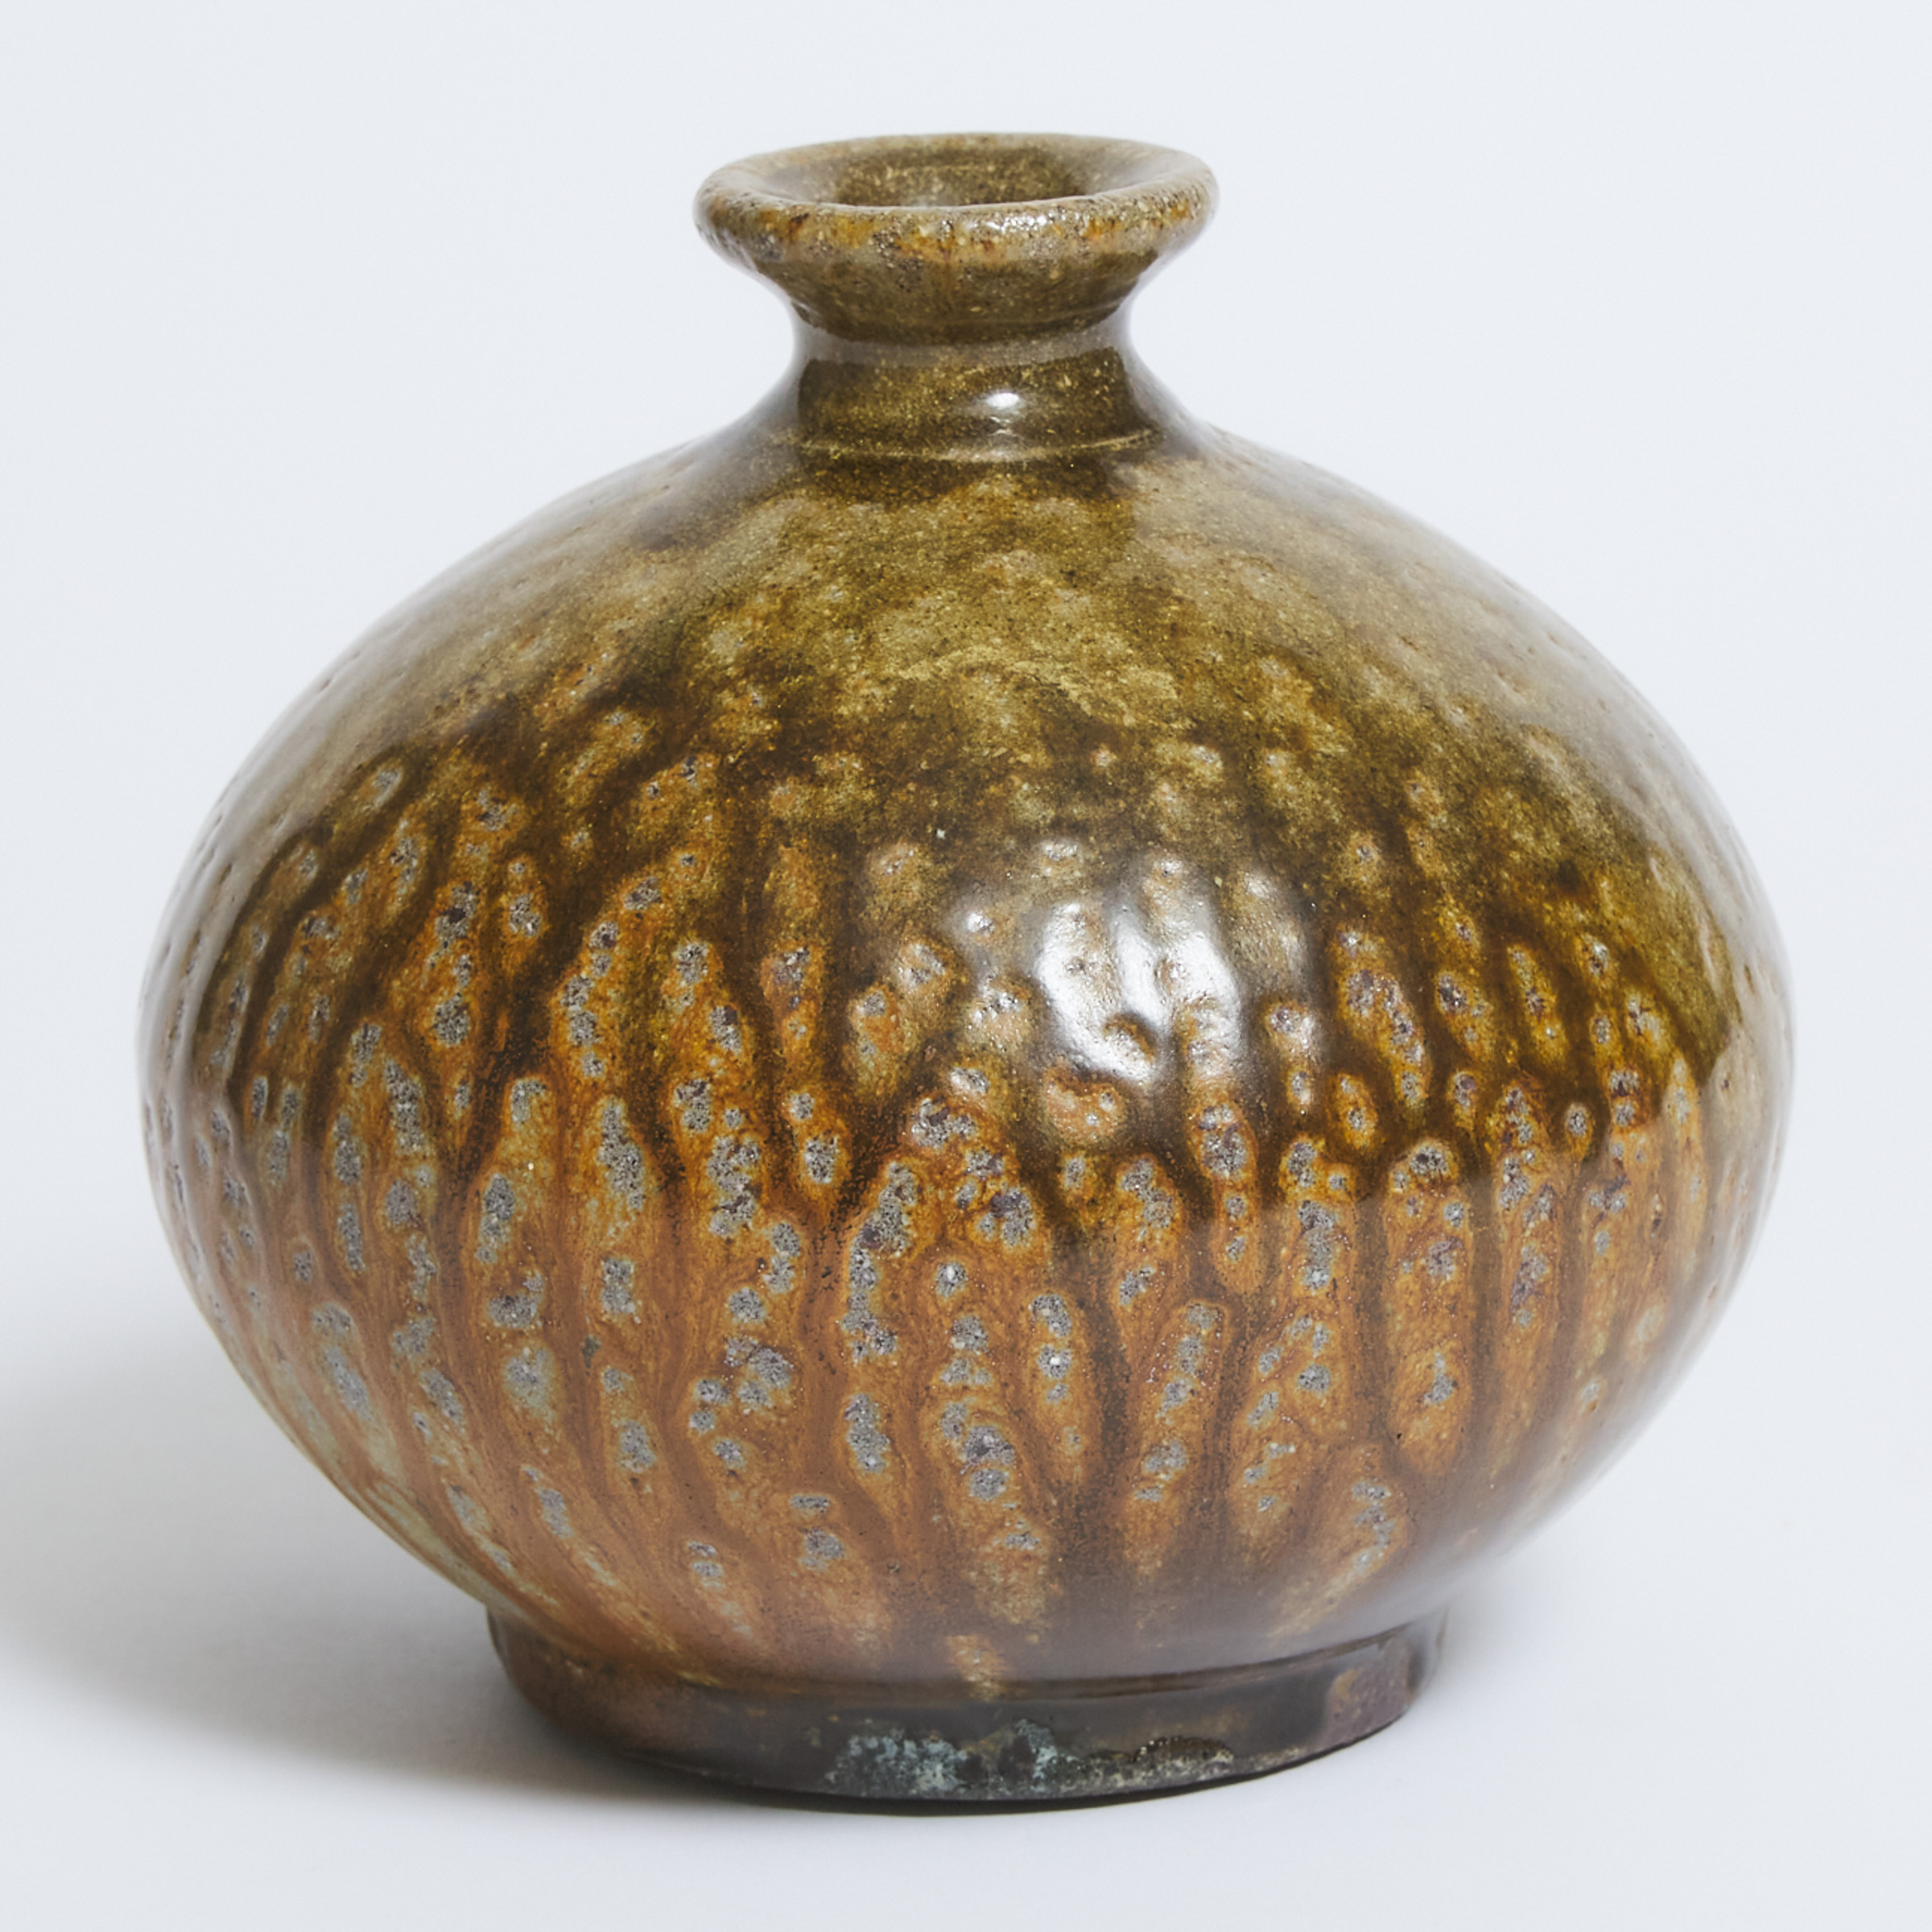 Robert Archambeau (Canadian, 1933-2022), Glazed Stoneware Vase, late 20th century